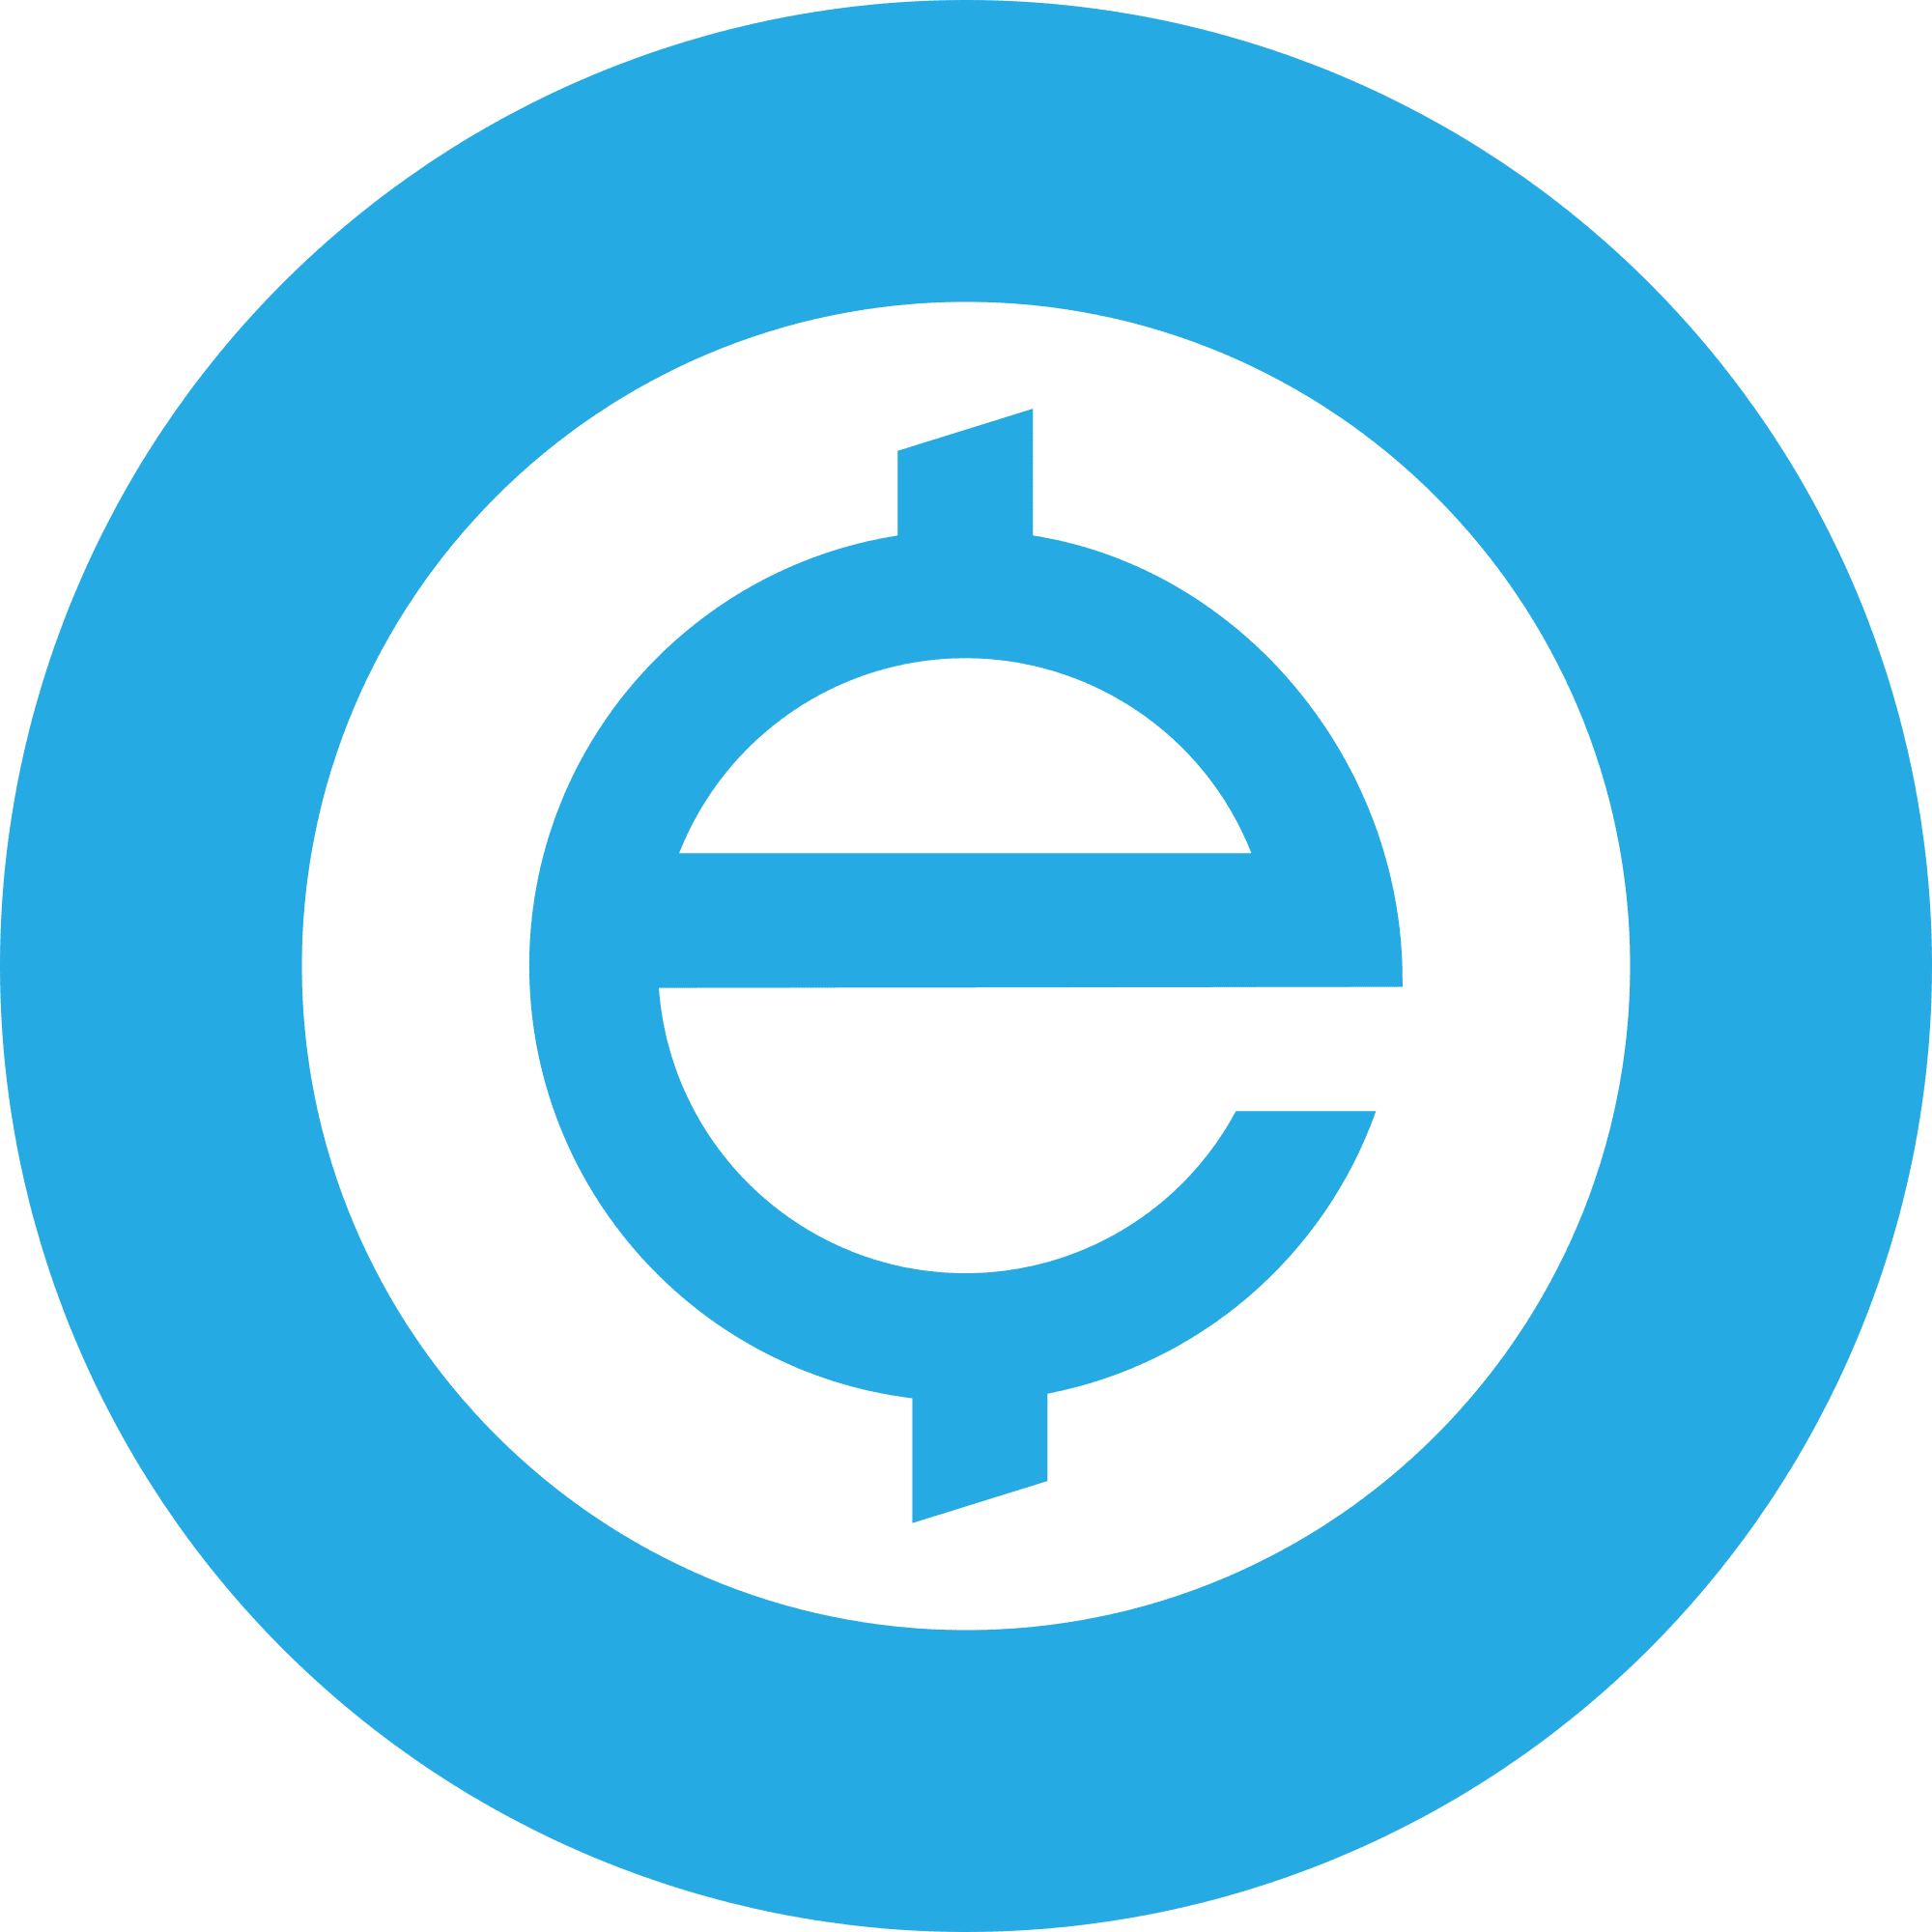 Exchange Union (XUC) logo